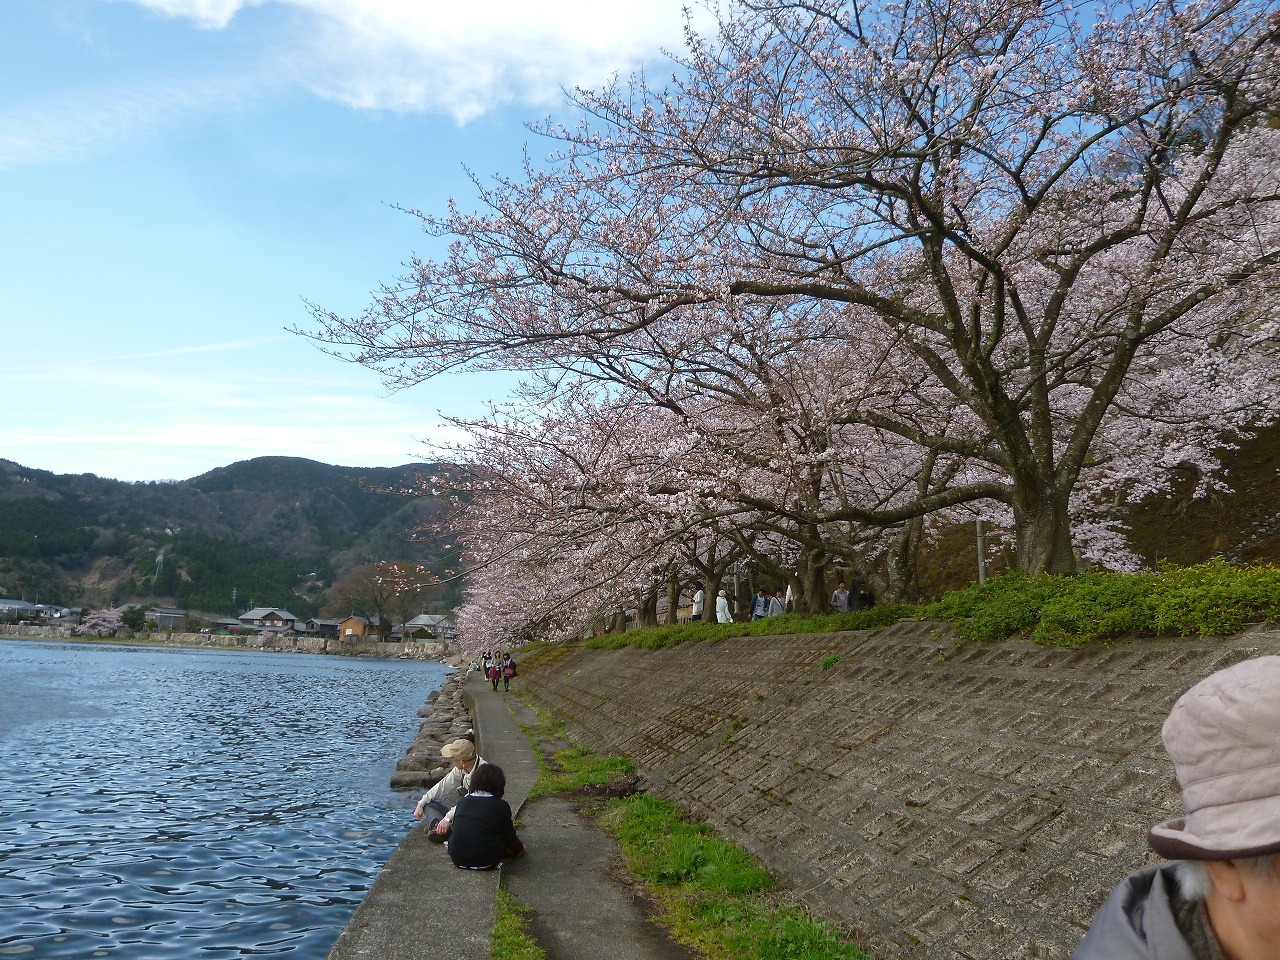 「日本のさくら名所100選」にも選ばれている海津大崎の桜